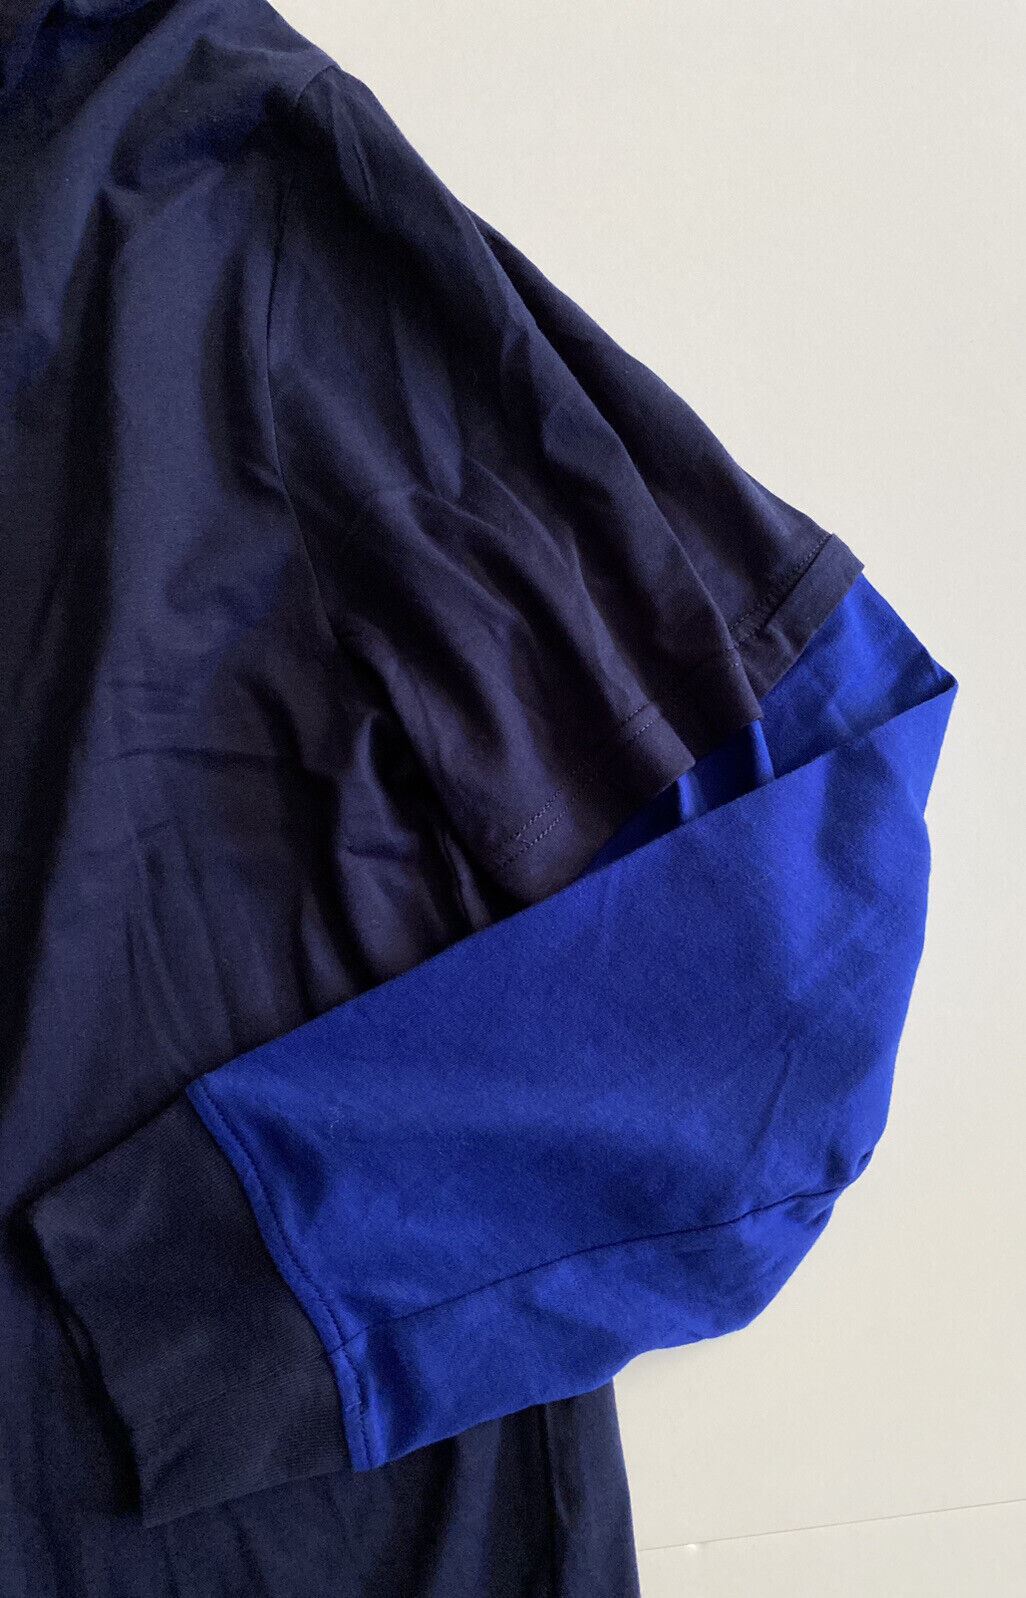 NWT Polo Ralph Lauren Толстовка с длинным рукавом и фирменным логотипом Темно-синяя толстовка 2XL 